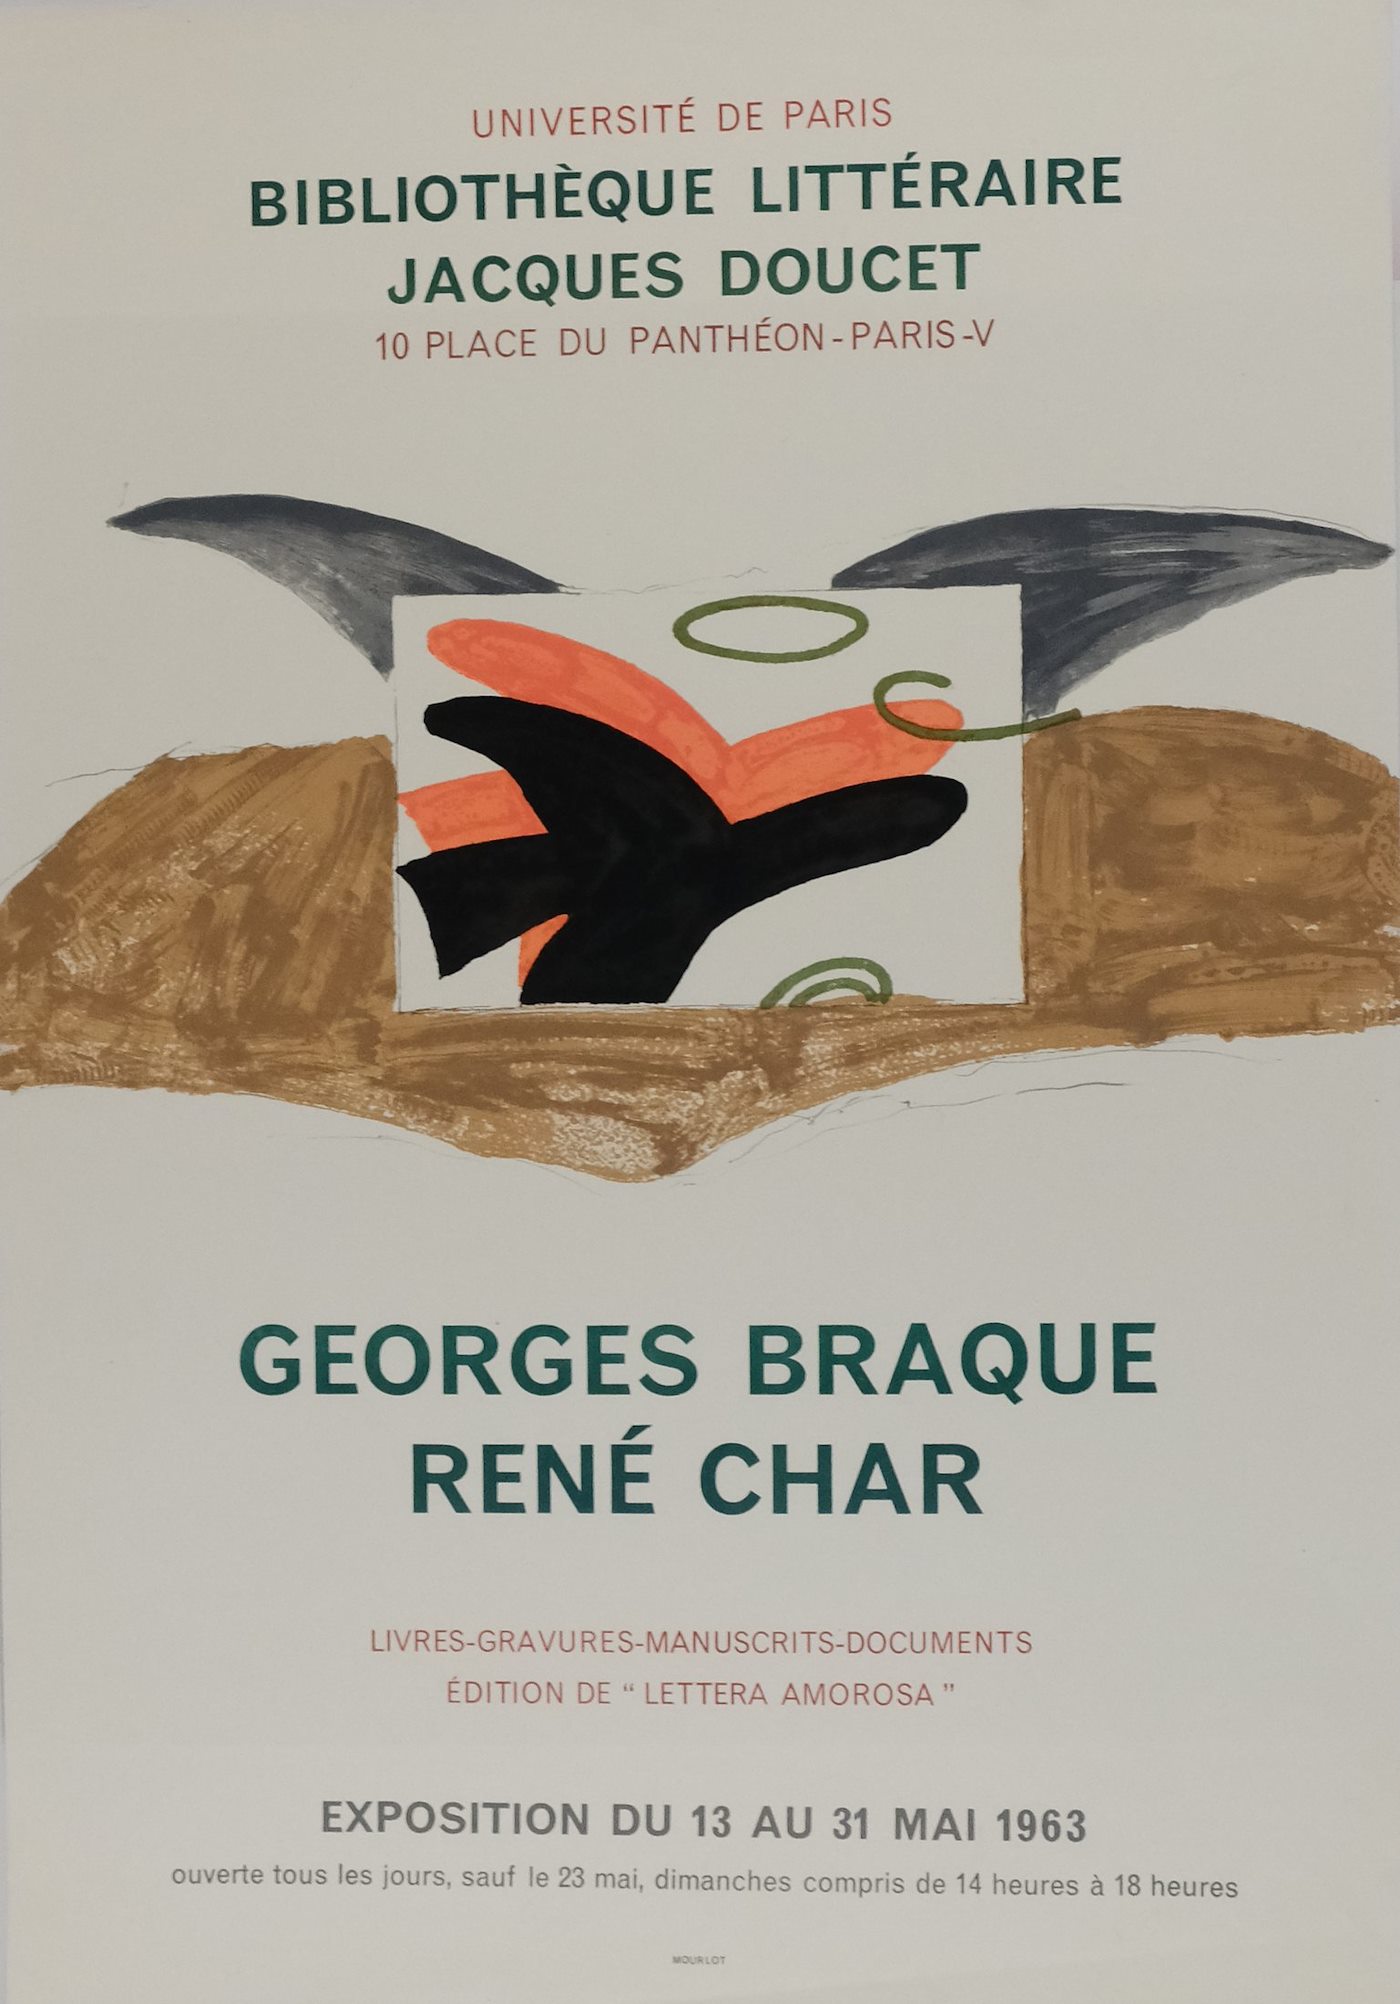 Georges Braque, René Char, André Lhote - Konvolut 3 plakátů - Braque, Char, Lhote